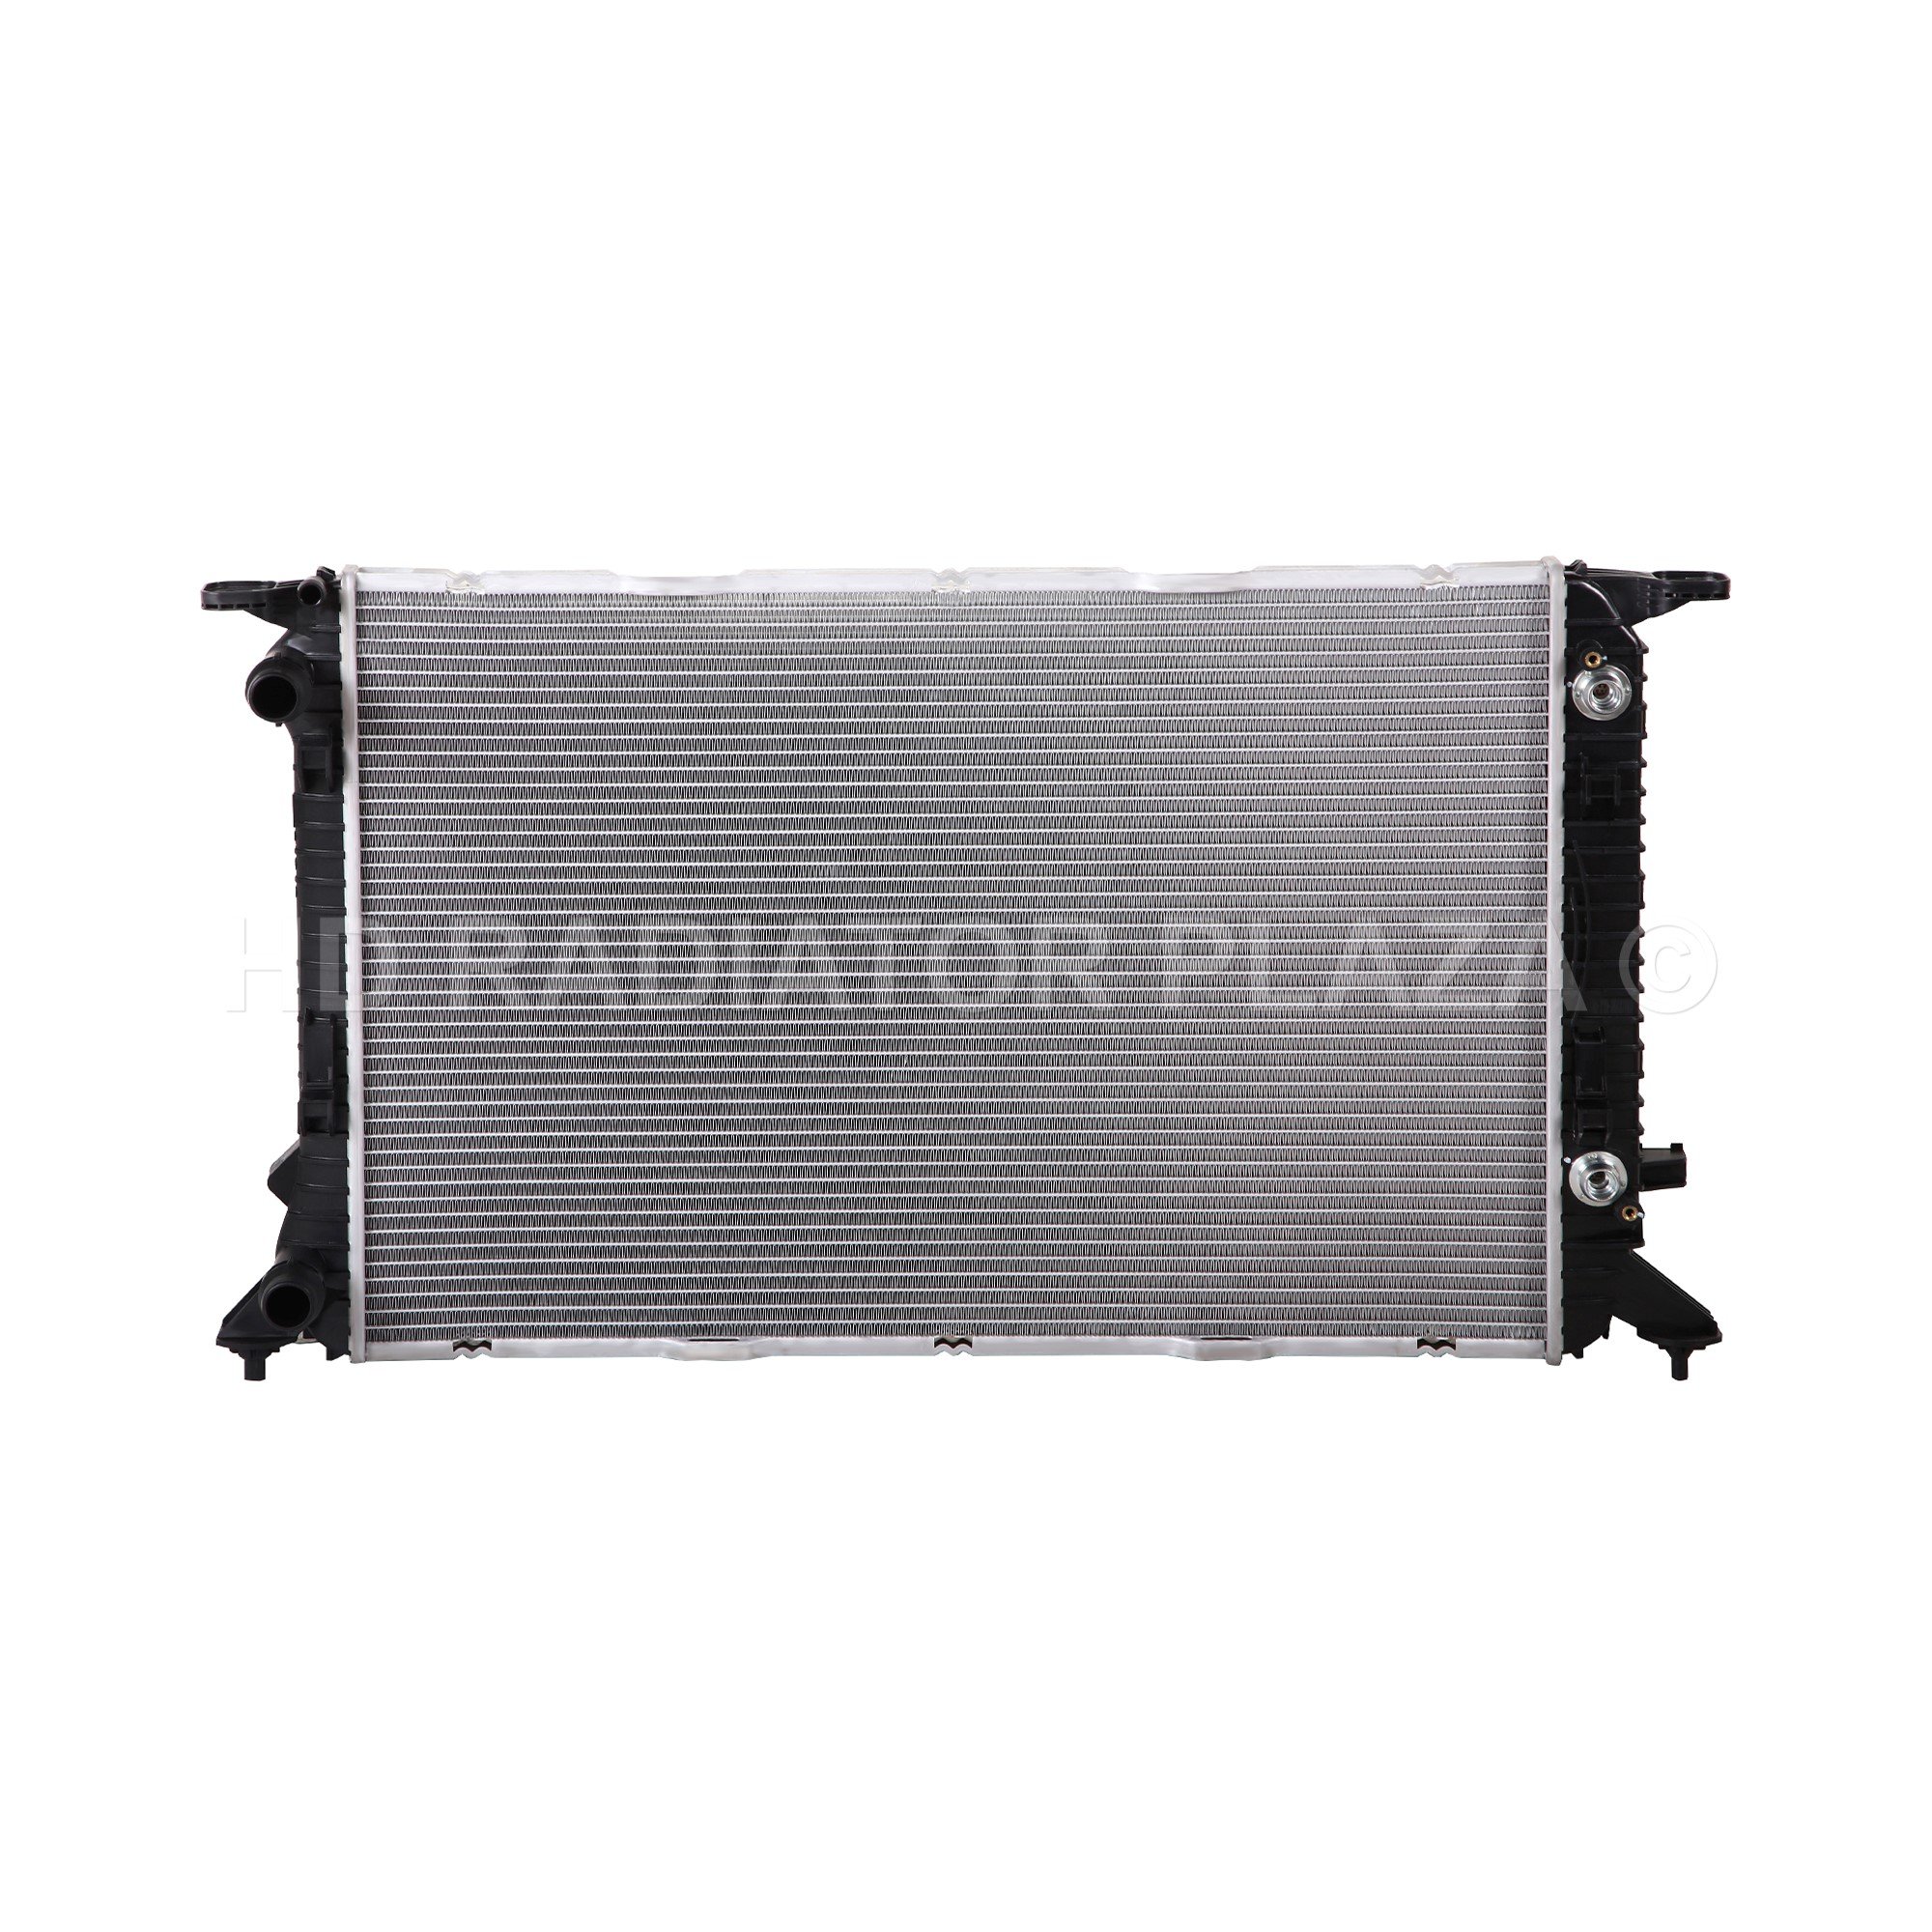 Radiator for 09-18 Audi A4/A5/A5 Quattro/A6/A6/A6 Quattro/allroad/Q3/Q3 Quattro/Q5